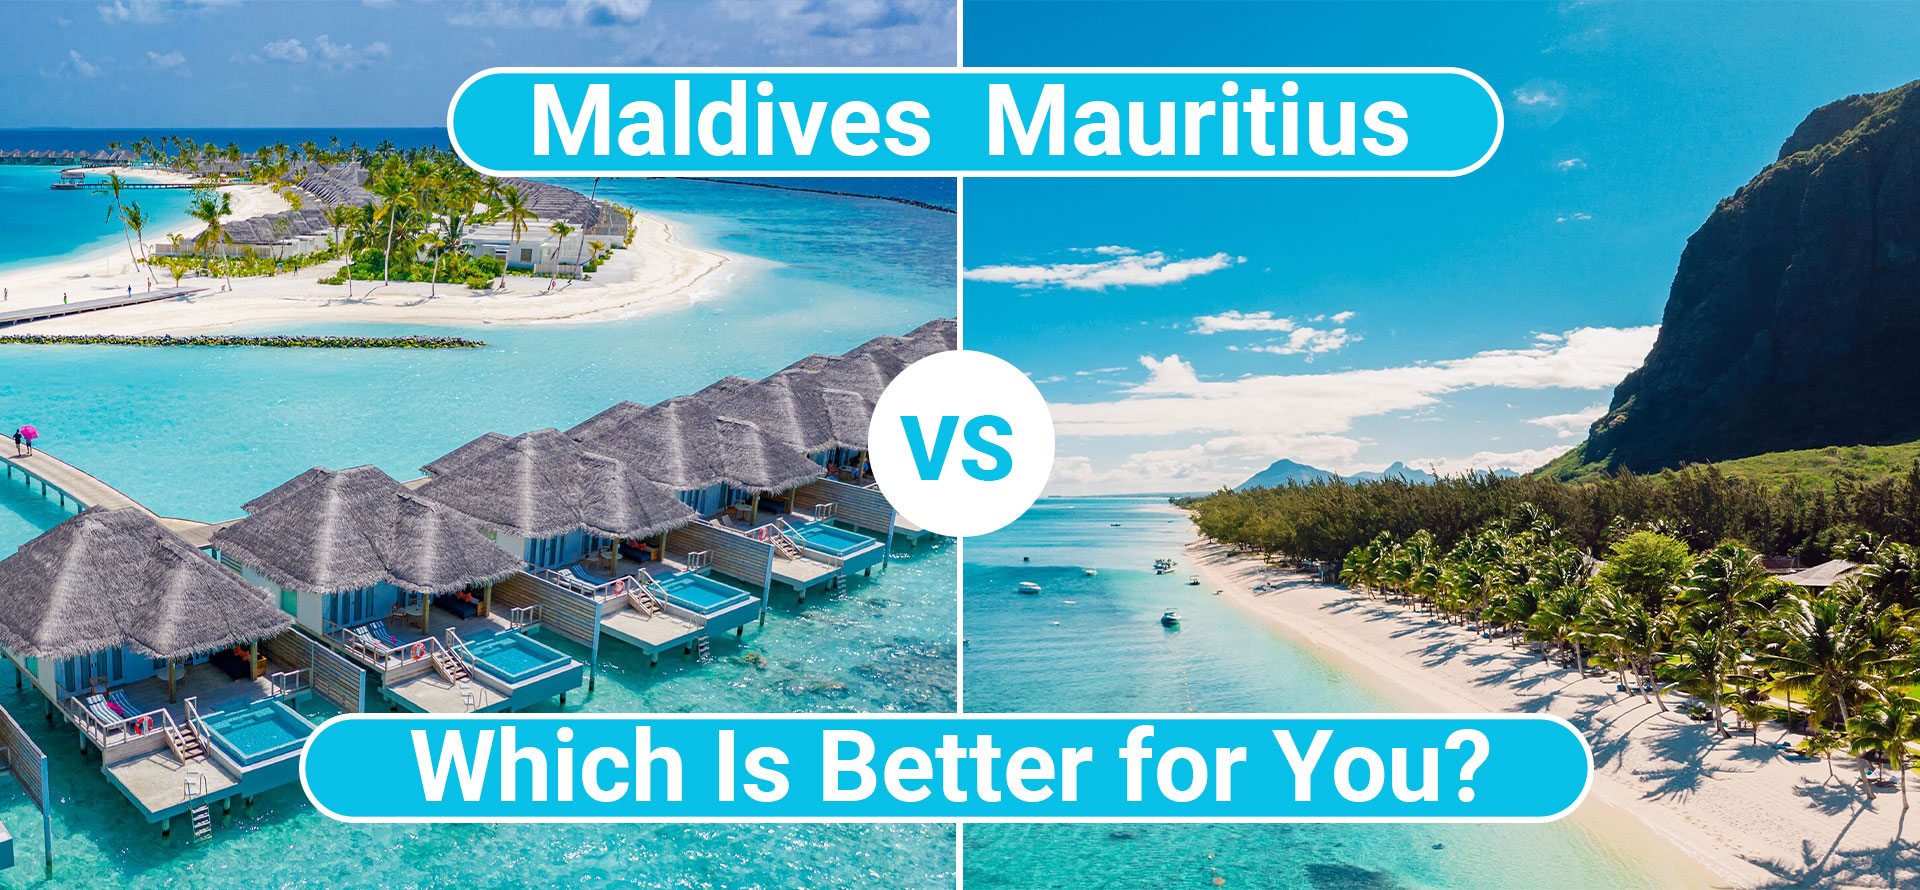 Maldives vs Mauritius.